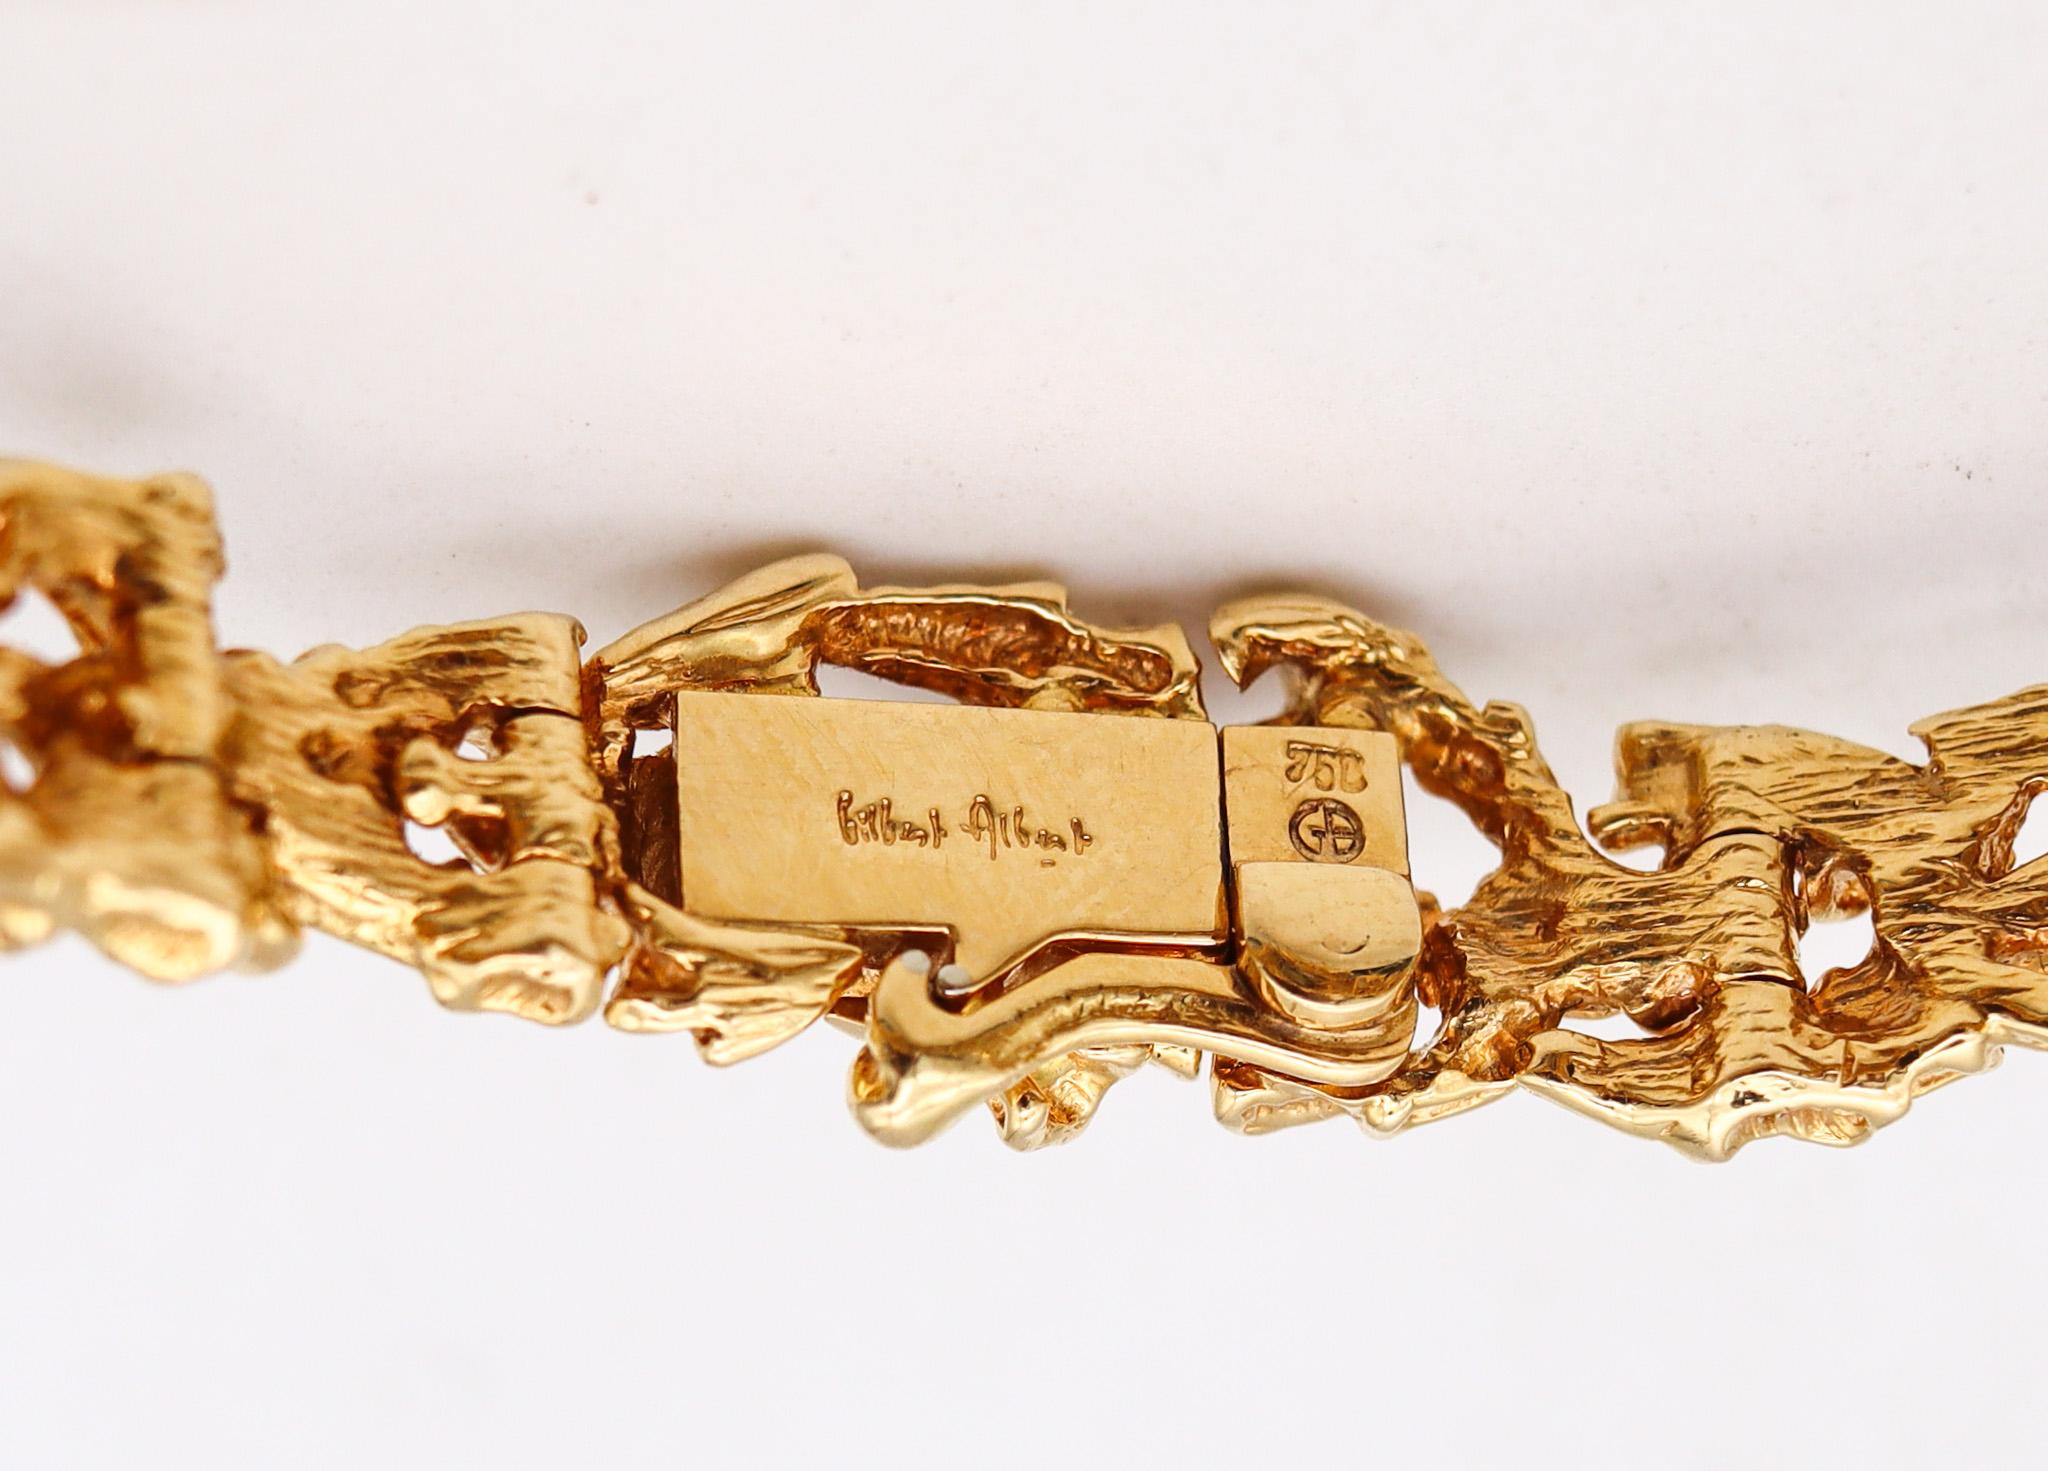 Bracelet conçu par Gilbert Albert (1930-2019).

Magnifique et très rare bracelet, créé à Genève en Suisse par le maître joaillier Gilbert Albert, dans les années 1970. Ce bracelet sculptural est une pièce unique, soigneusement réalisée avec des